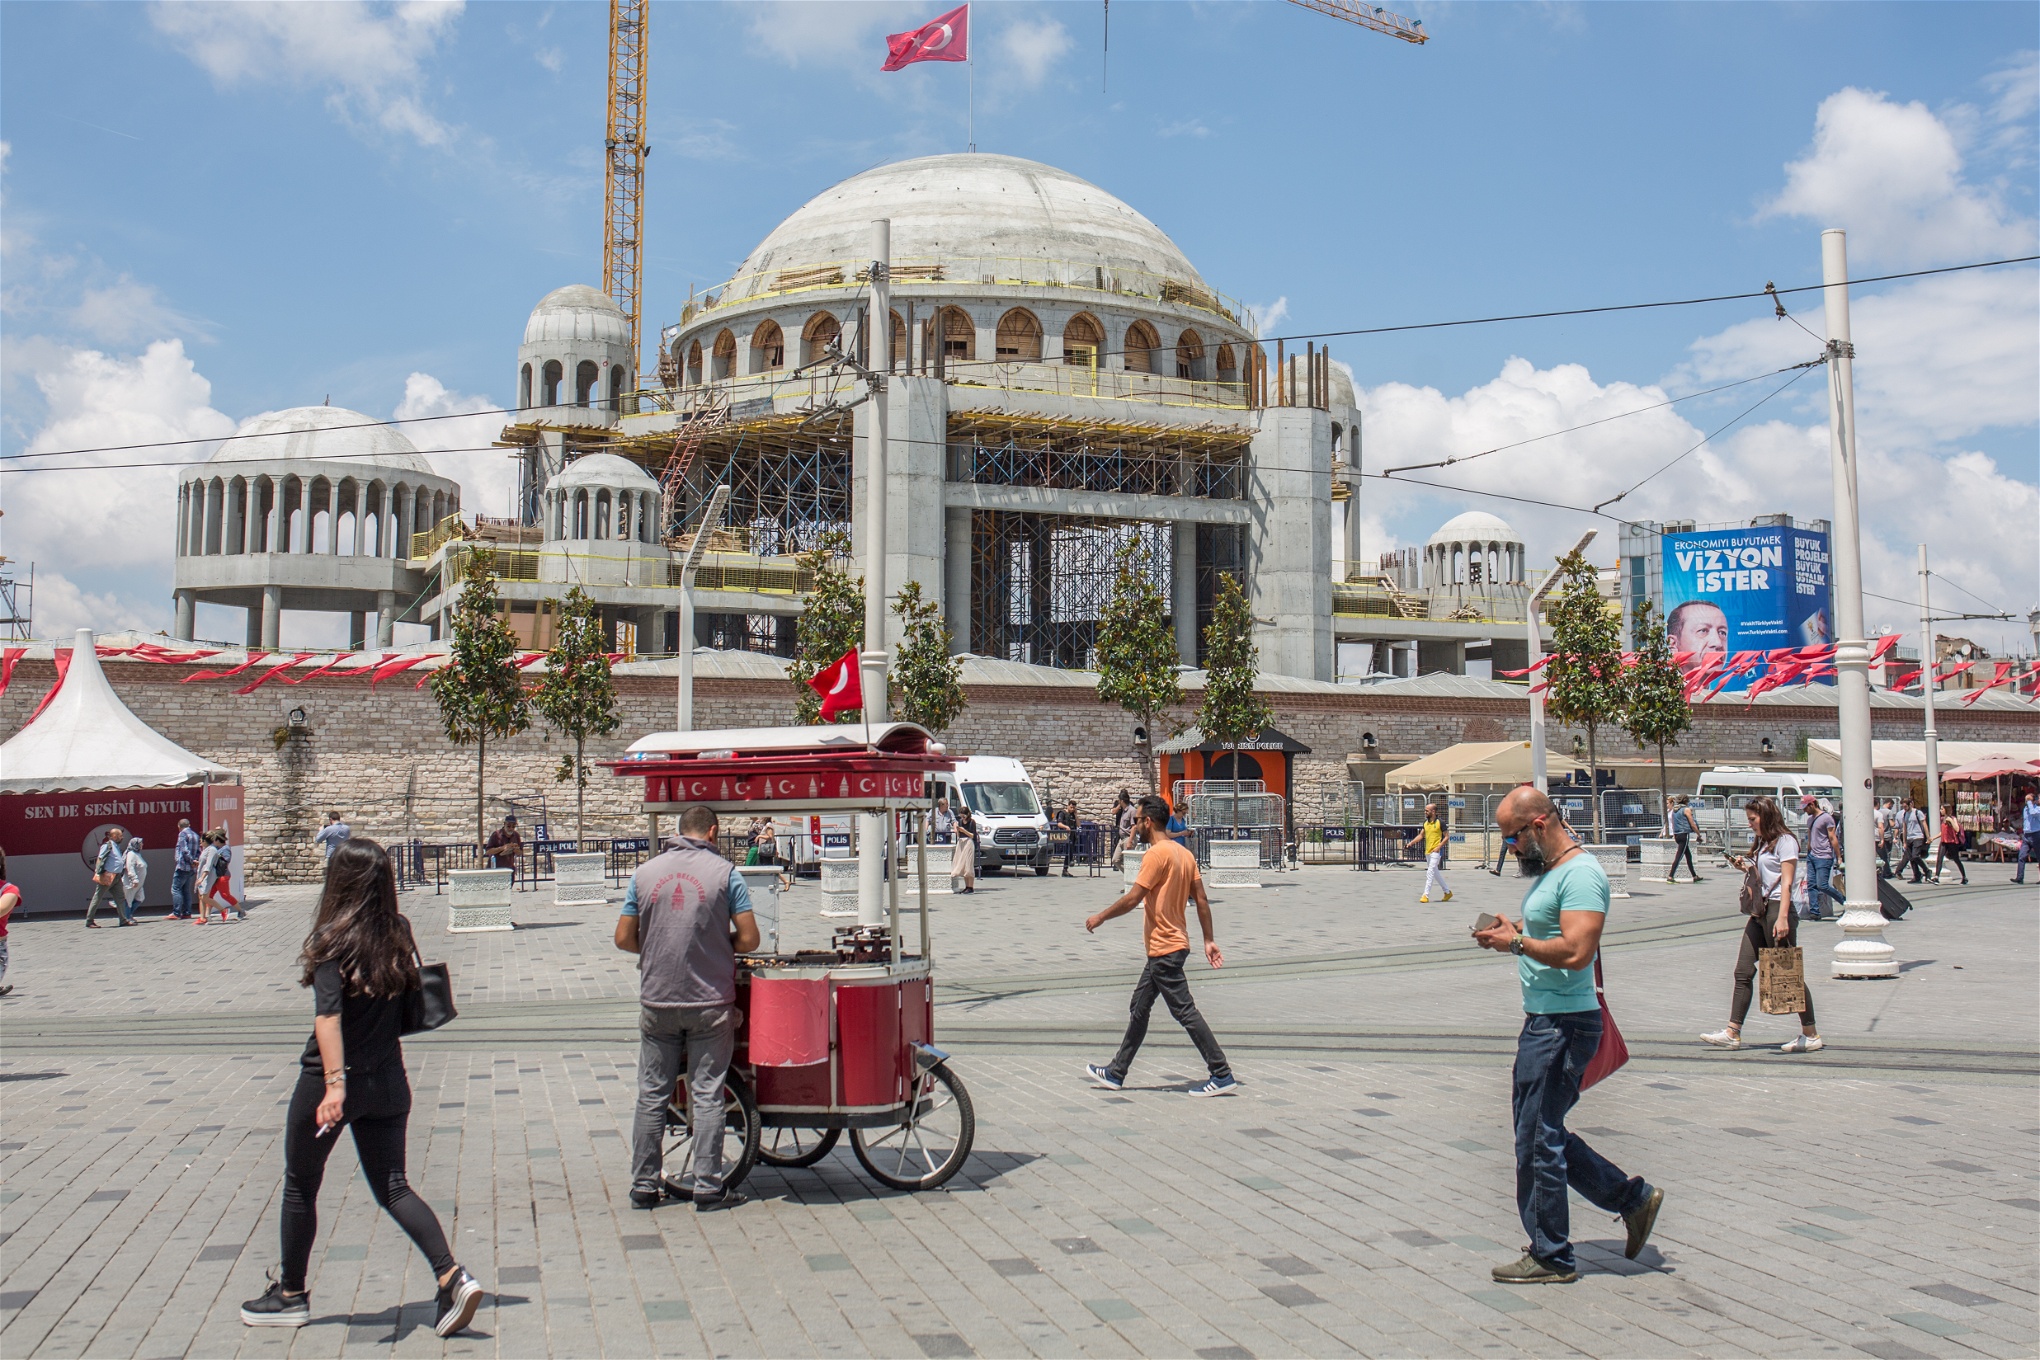 Religionens roll i samhället har blivit en stridsfråga i dagens Turkiet, när regeringen fortsätter bygga allt fler moskéer i tidigare sekulära miljöer. 